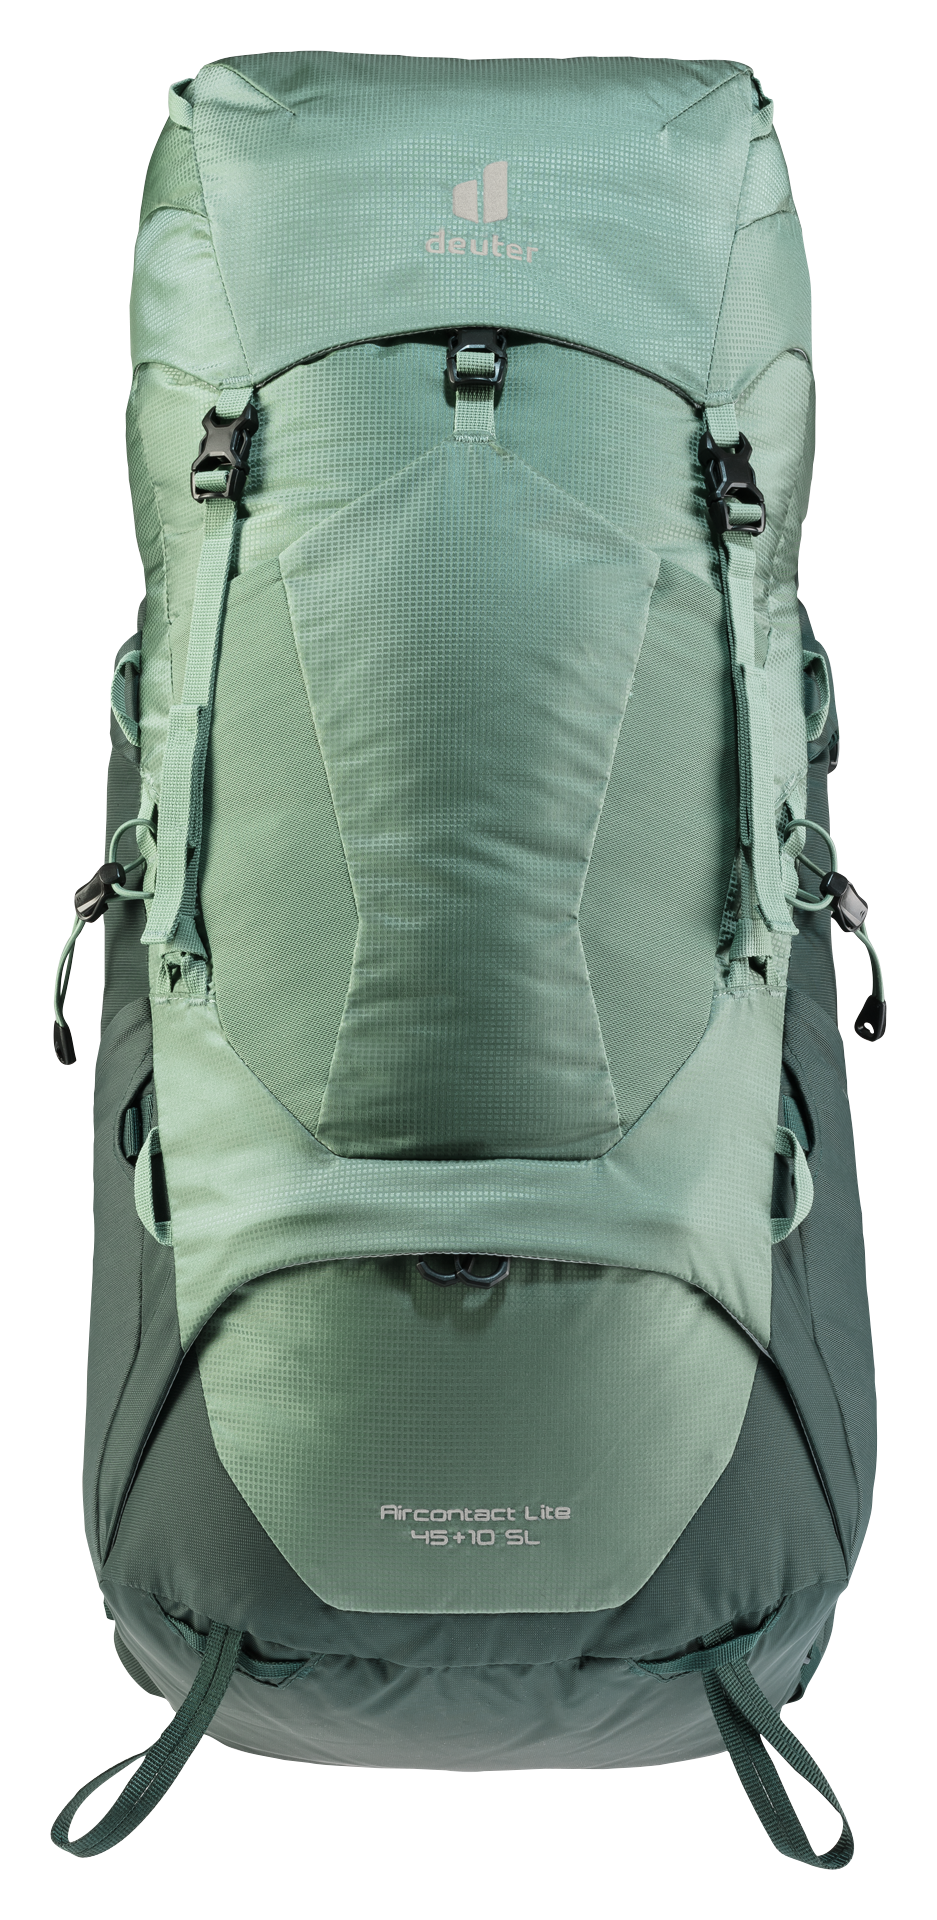 Aircontact Lite 45+10 SL Backpack: Weekender